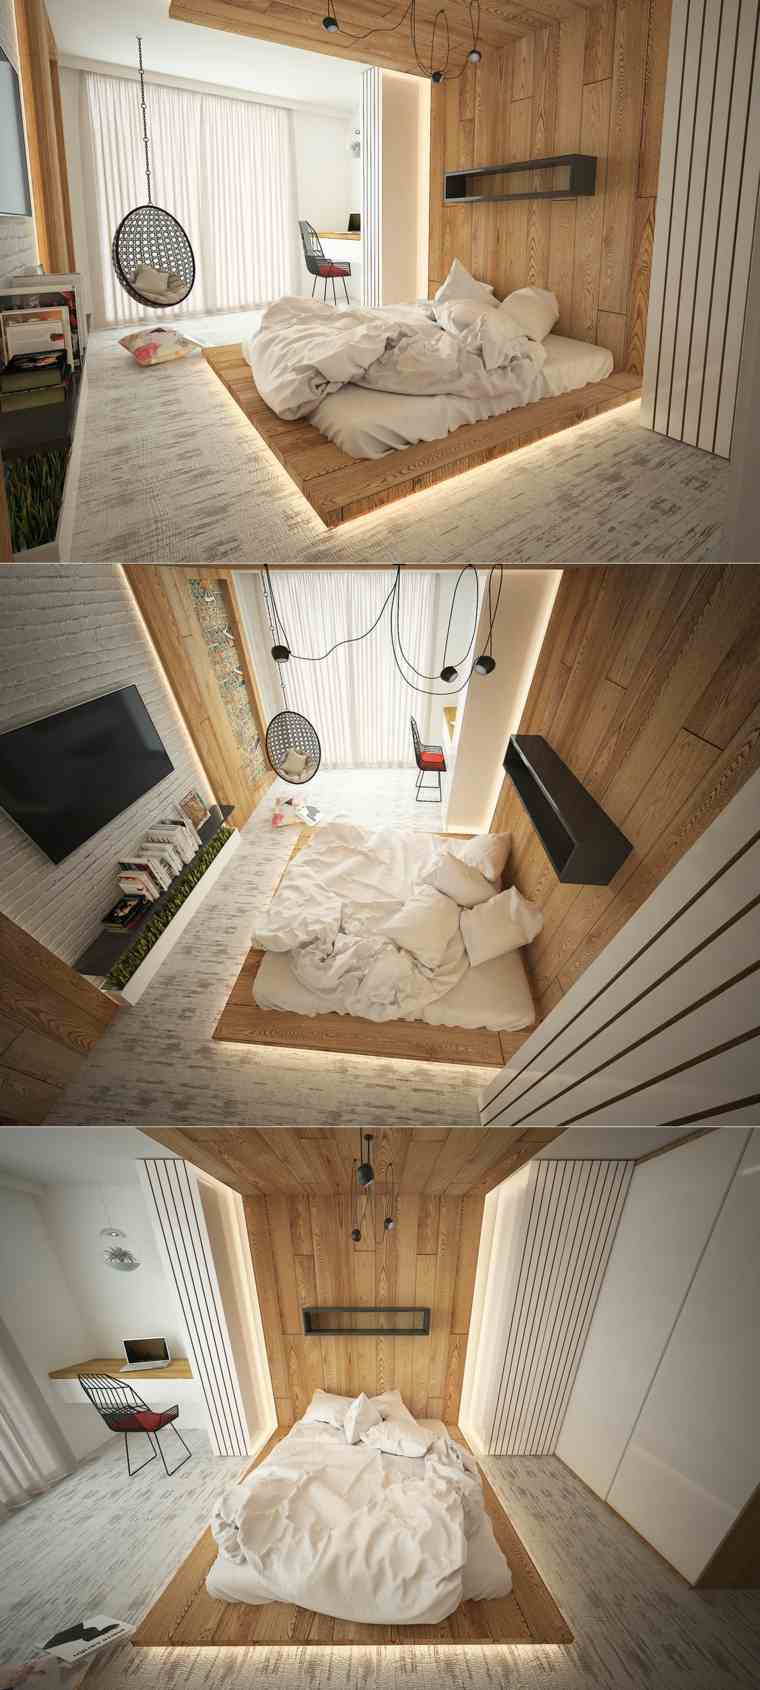 ランプ寝室サスペンションアイデアベッドアームチェアインテリア木製壁寄木細工のデザインアイデア家具